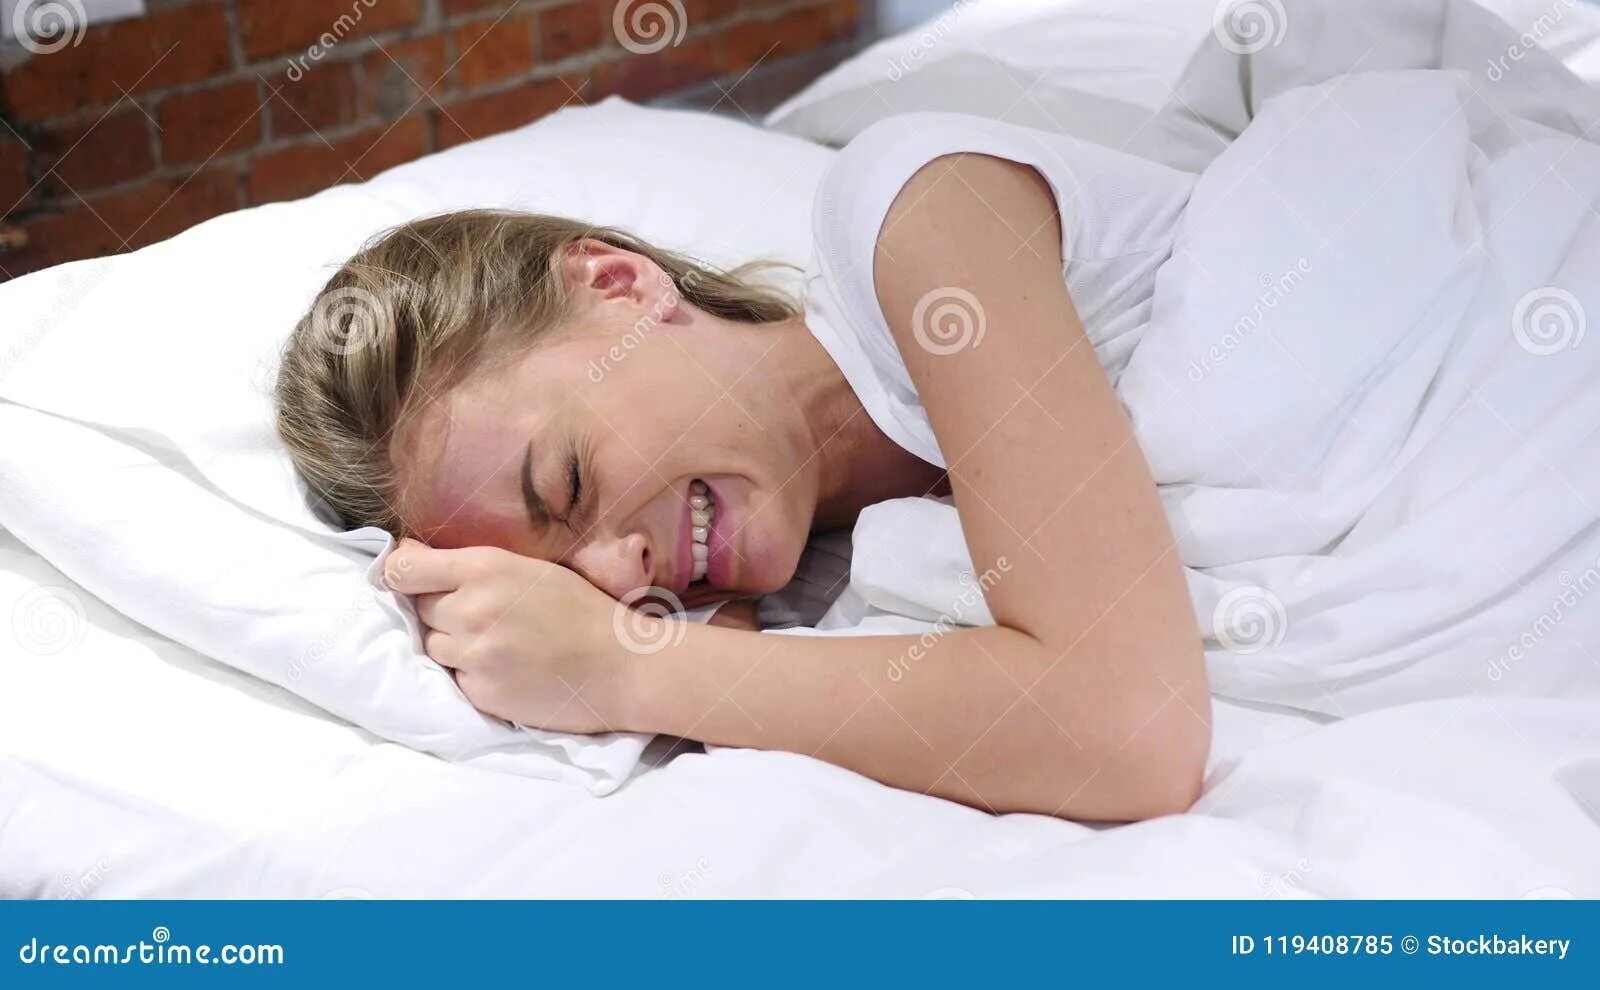 Сон мама кричит. Плач в подушку. Женщина лежит в постели. Плачет в подушку.